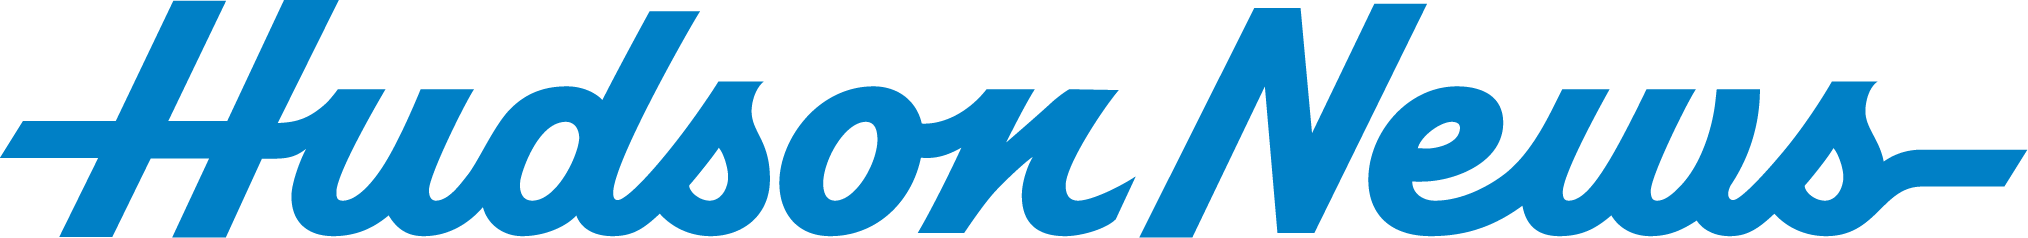 Hudson_News_logo